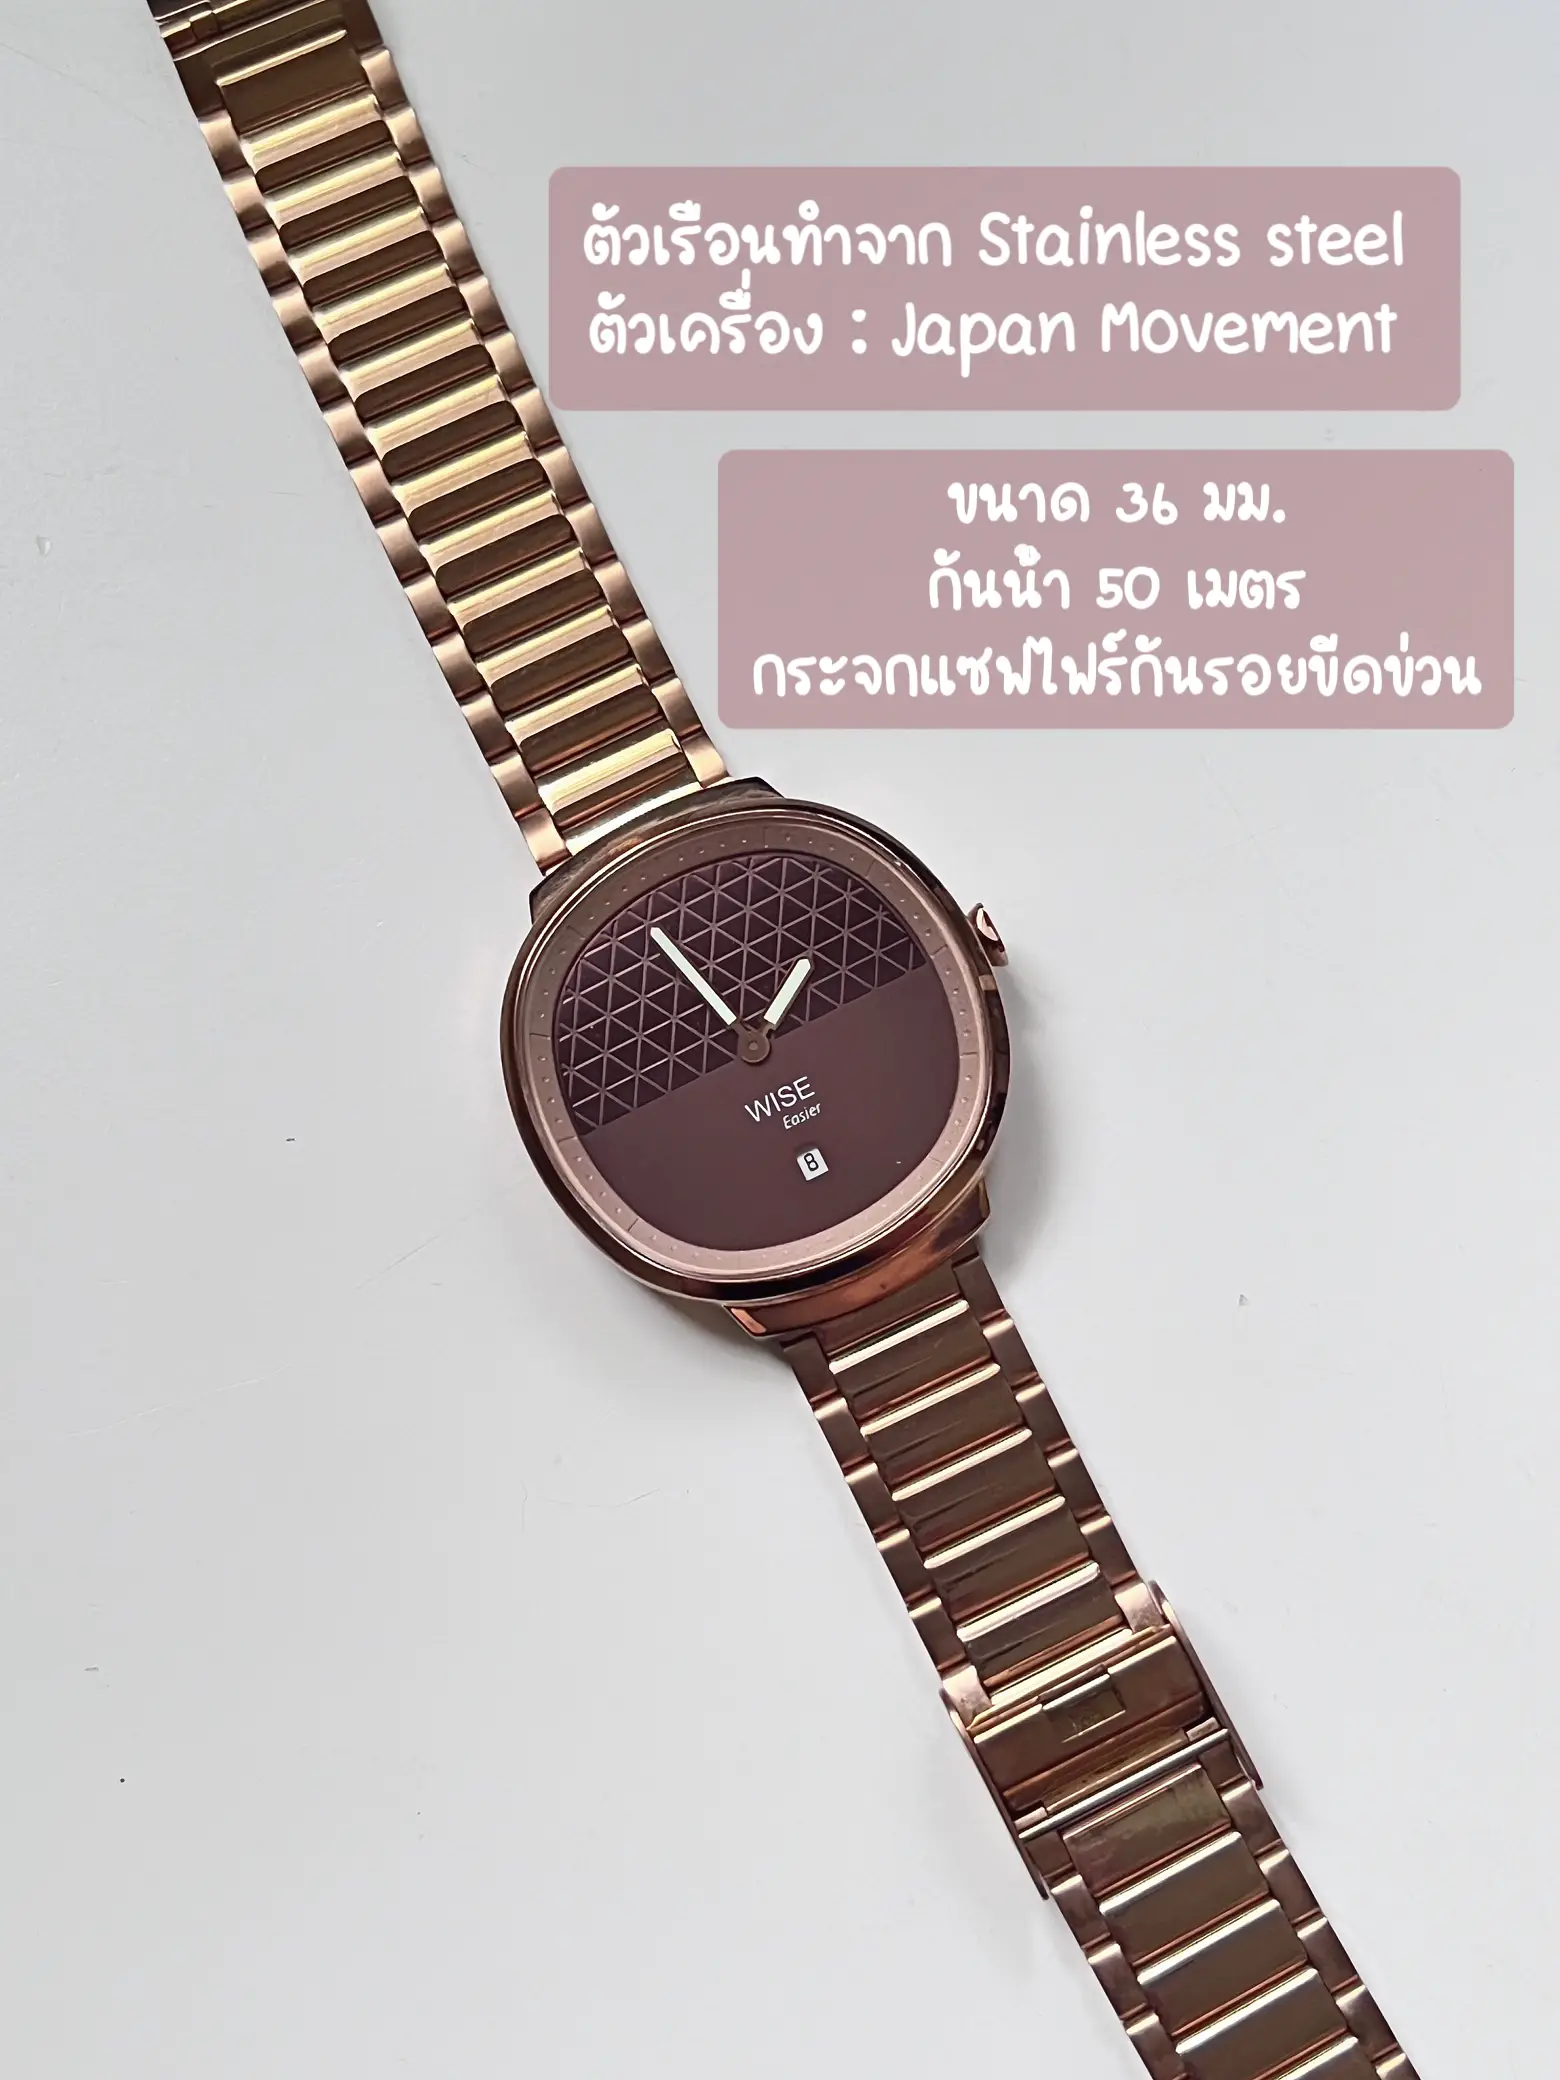 イージーモデルワイズブランドの腕時計。 | Jaoyingが投稿したフォトブック | Lemon8